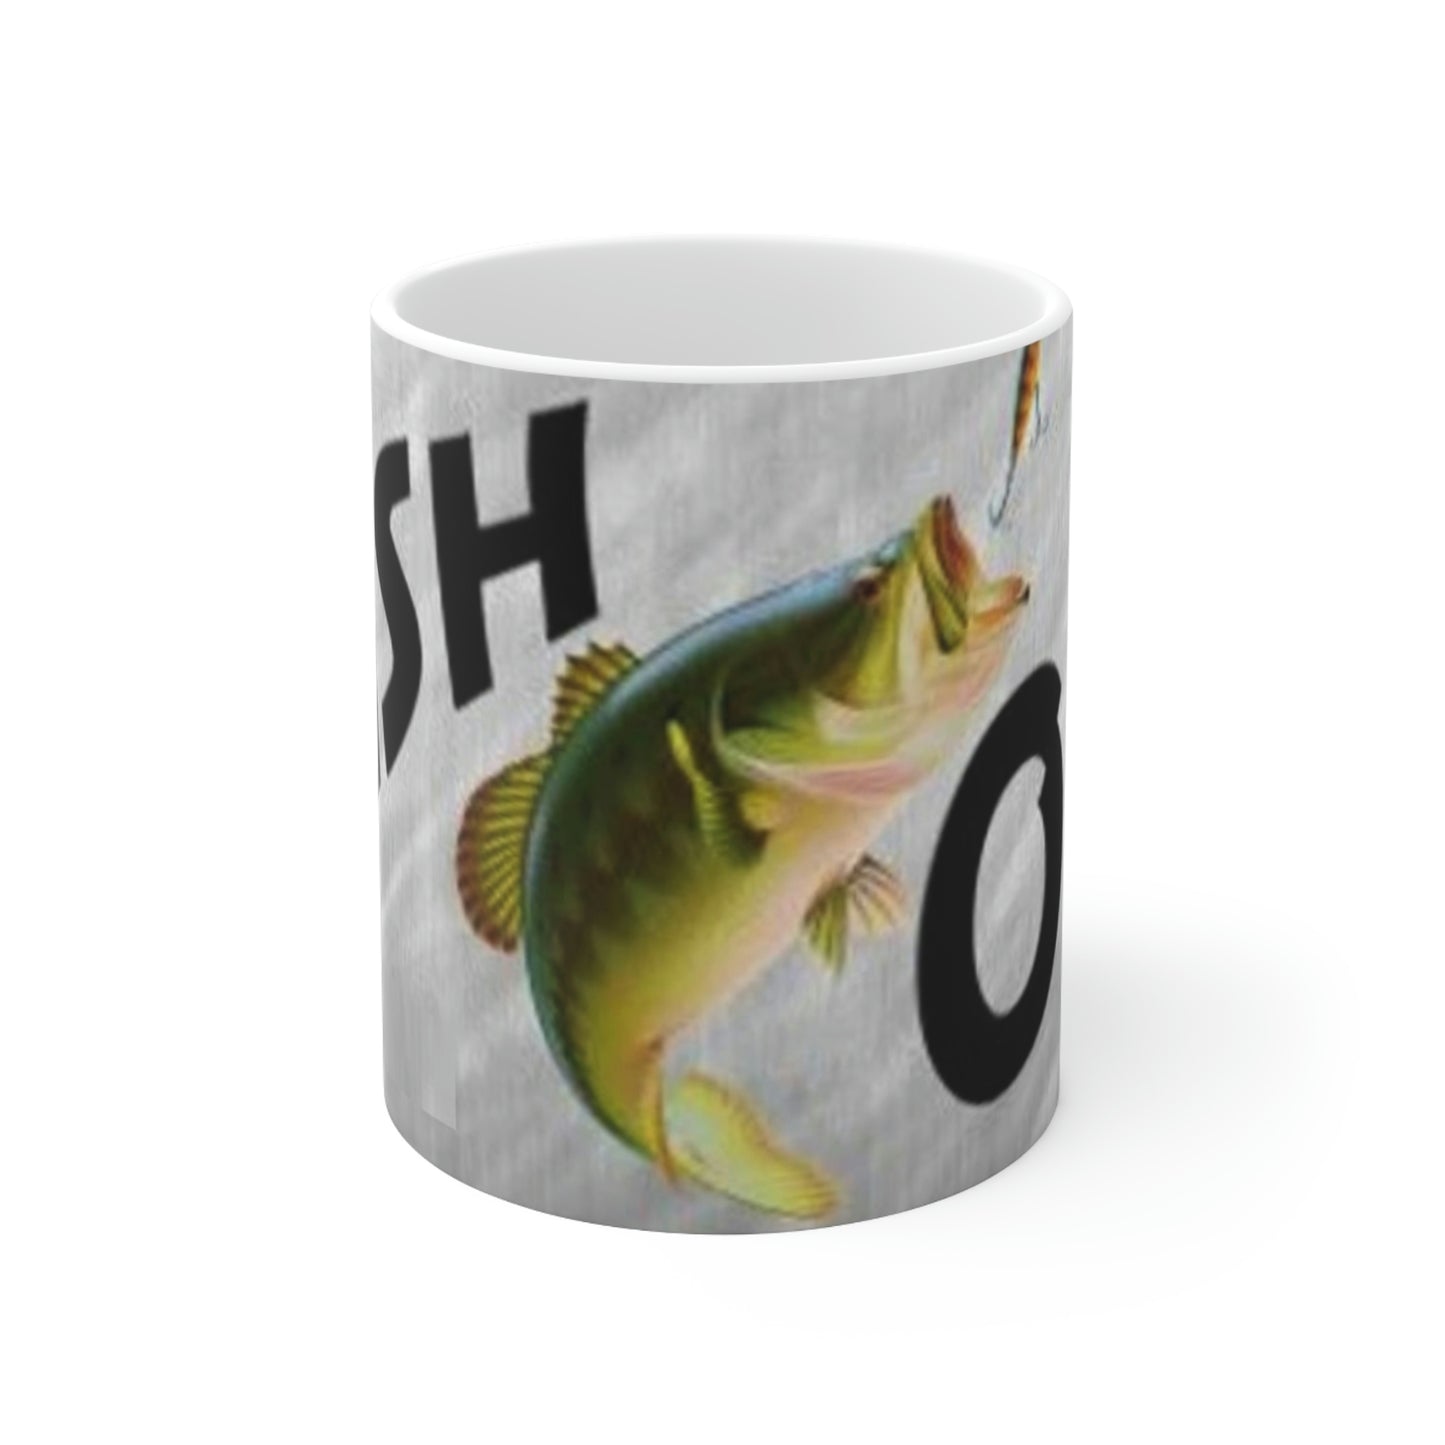 Fish-On Fishermans Ceramic Mug 11oz